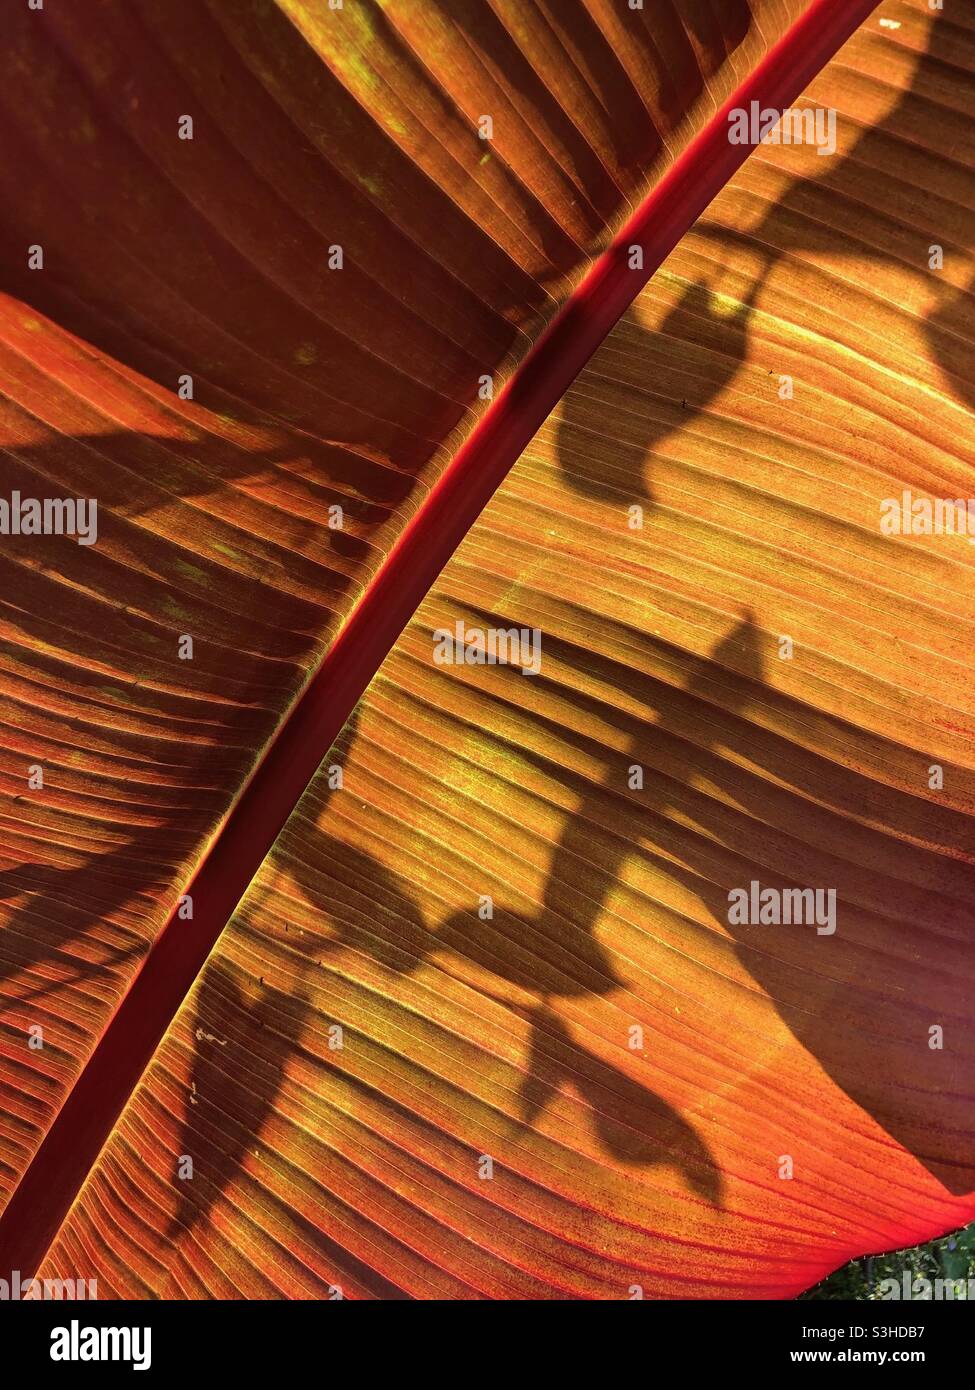 Shadows cast on a banana leaf Stock Photo